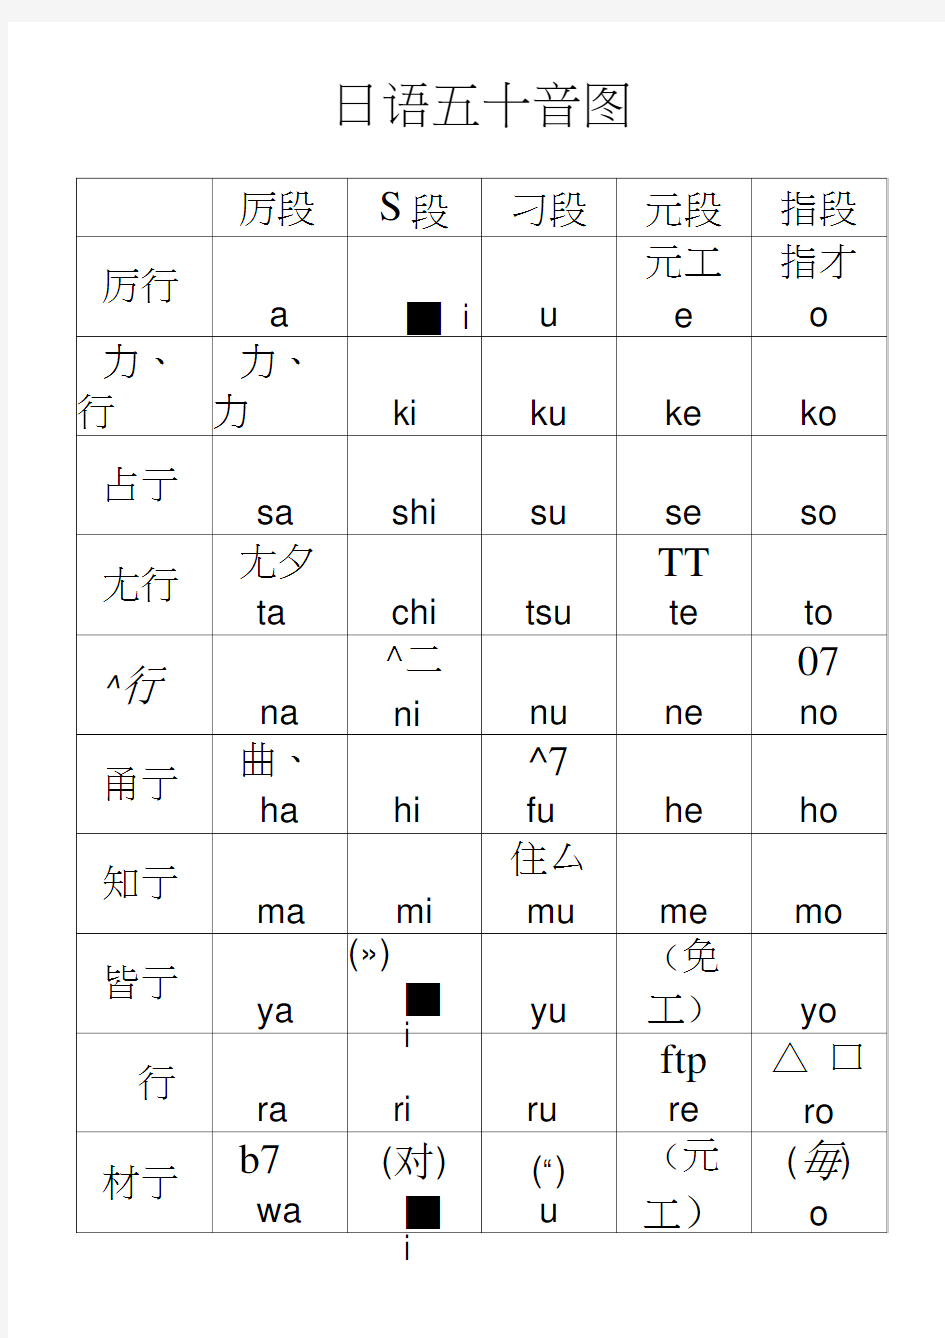 日语五十音图及发音规则